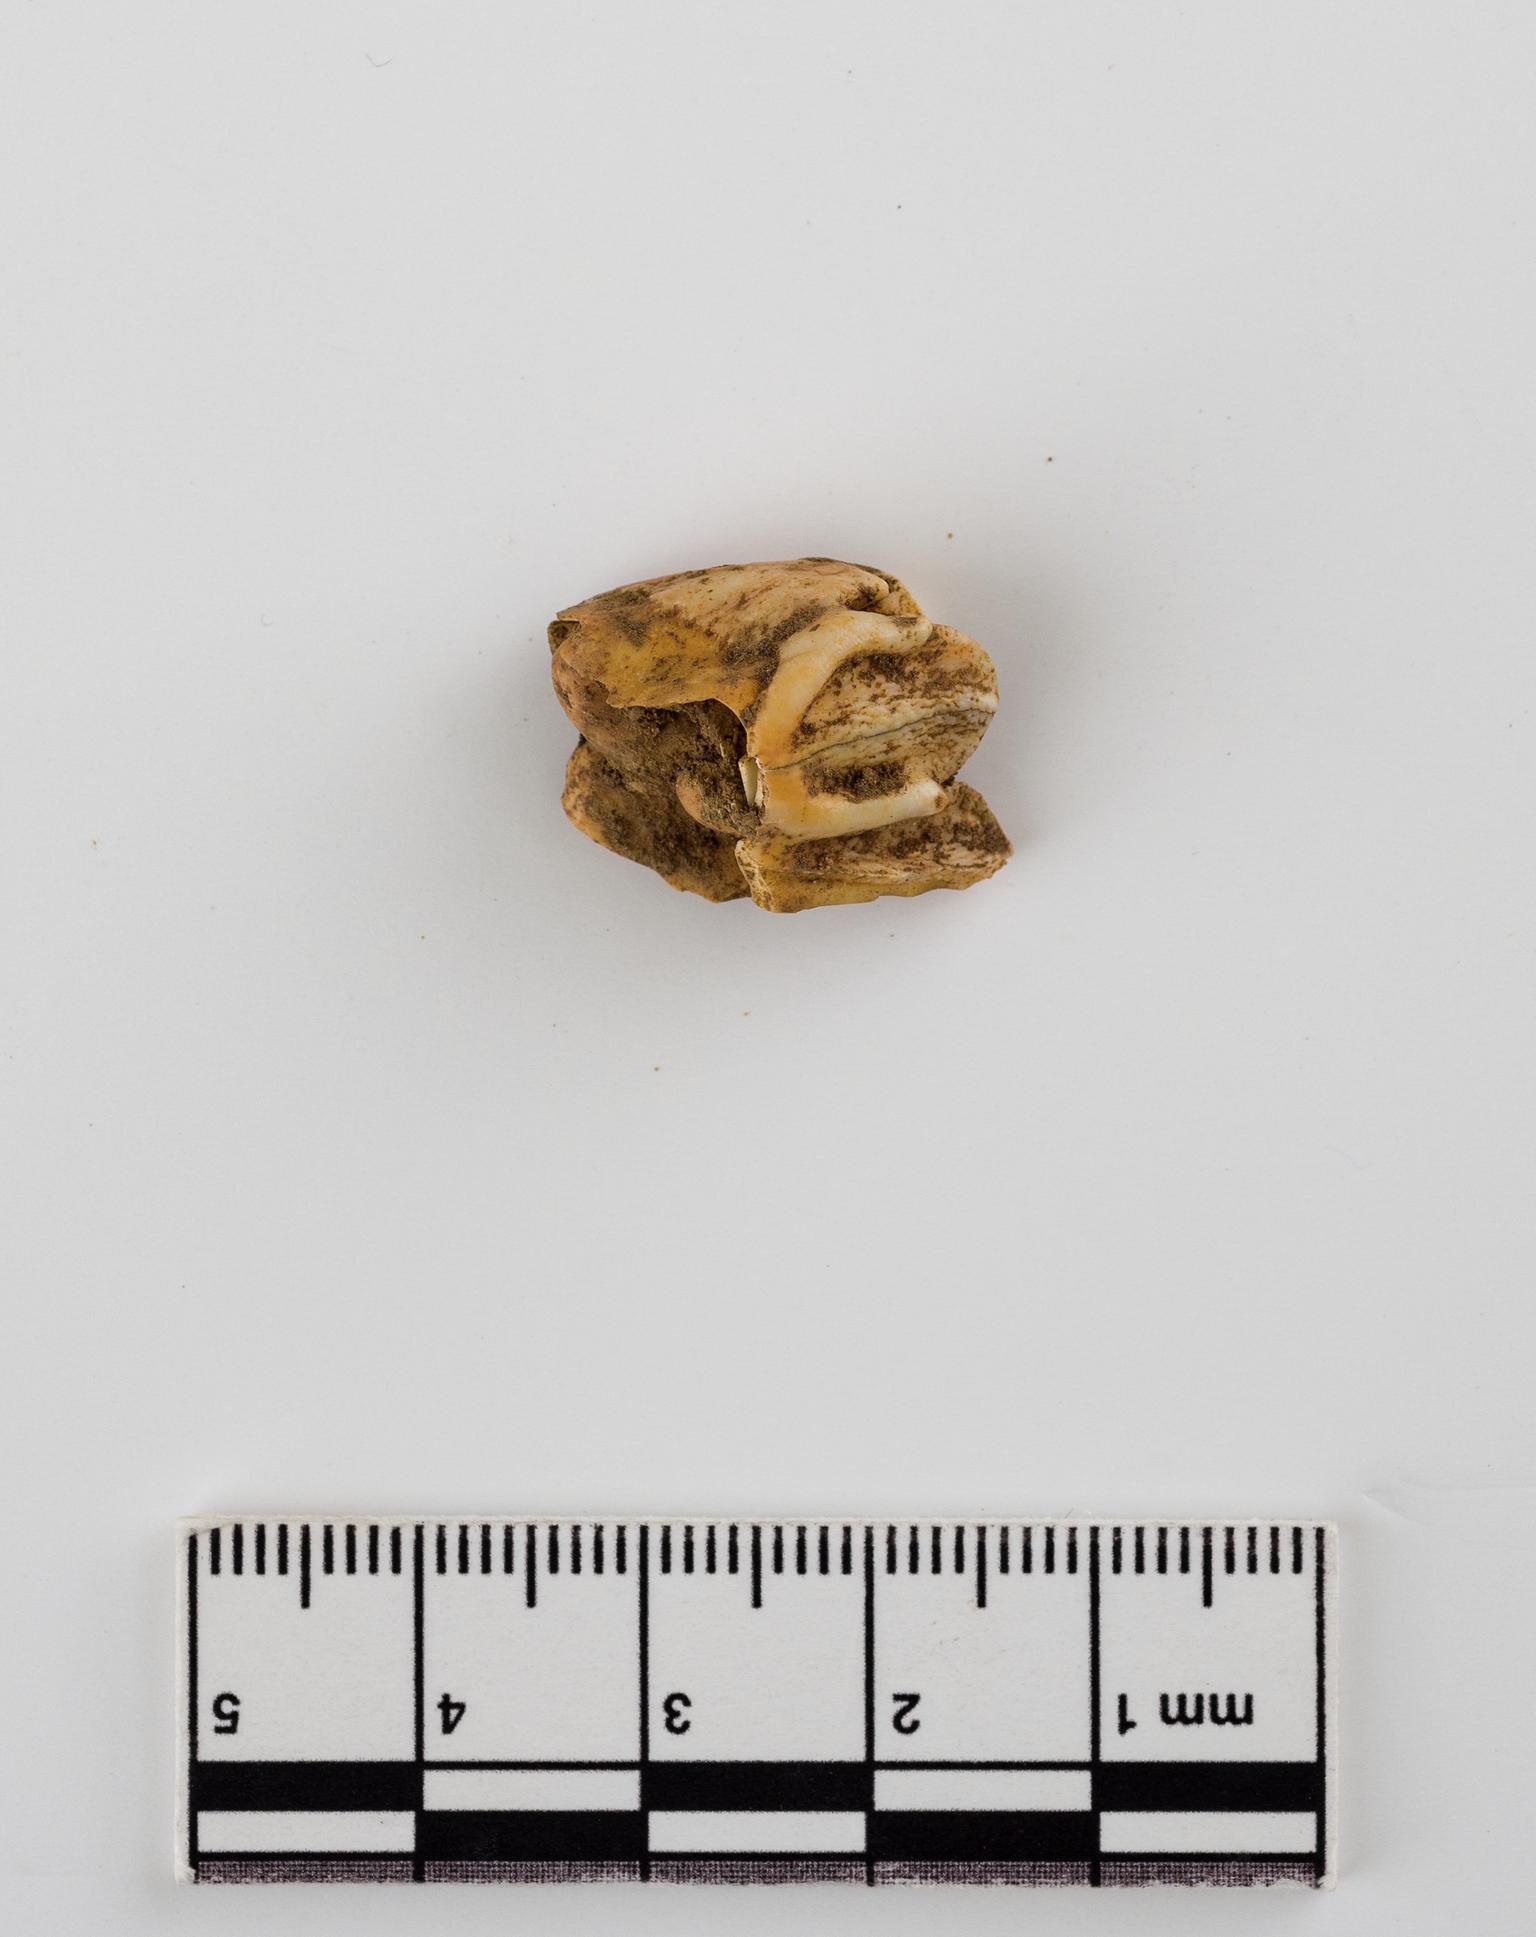 Pleistocene reindeer tooth